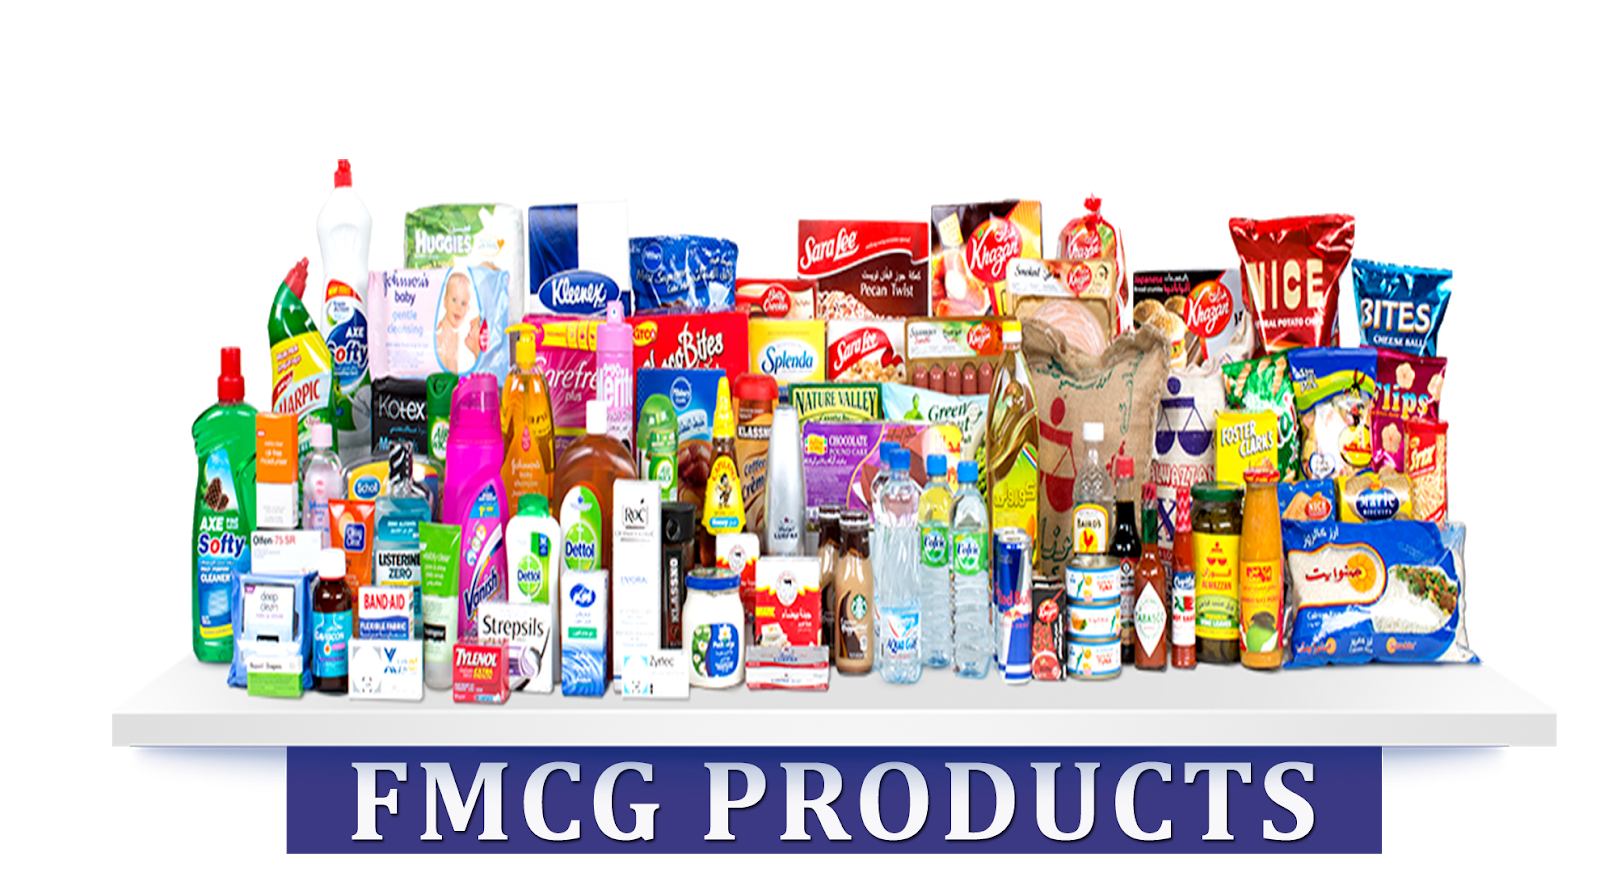 General product. FMCG товары. Продукция FMCG. FMCG продукты. Баннер для магазина бытовой химии.